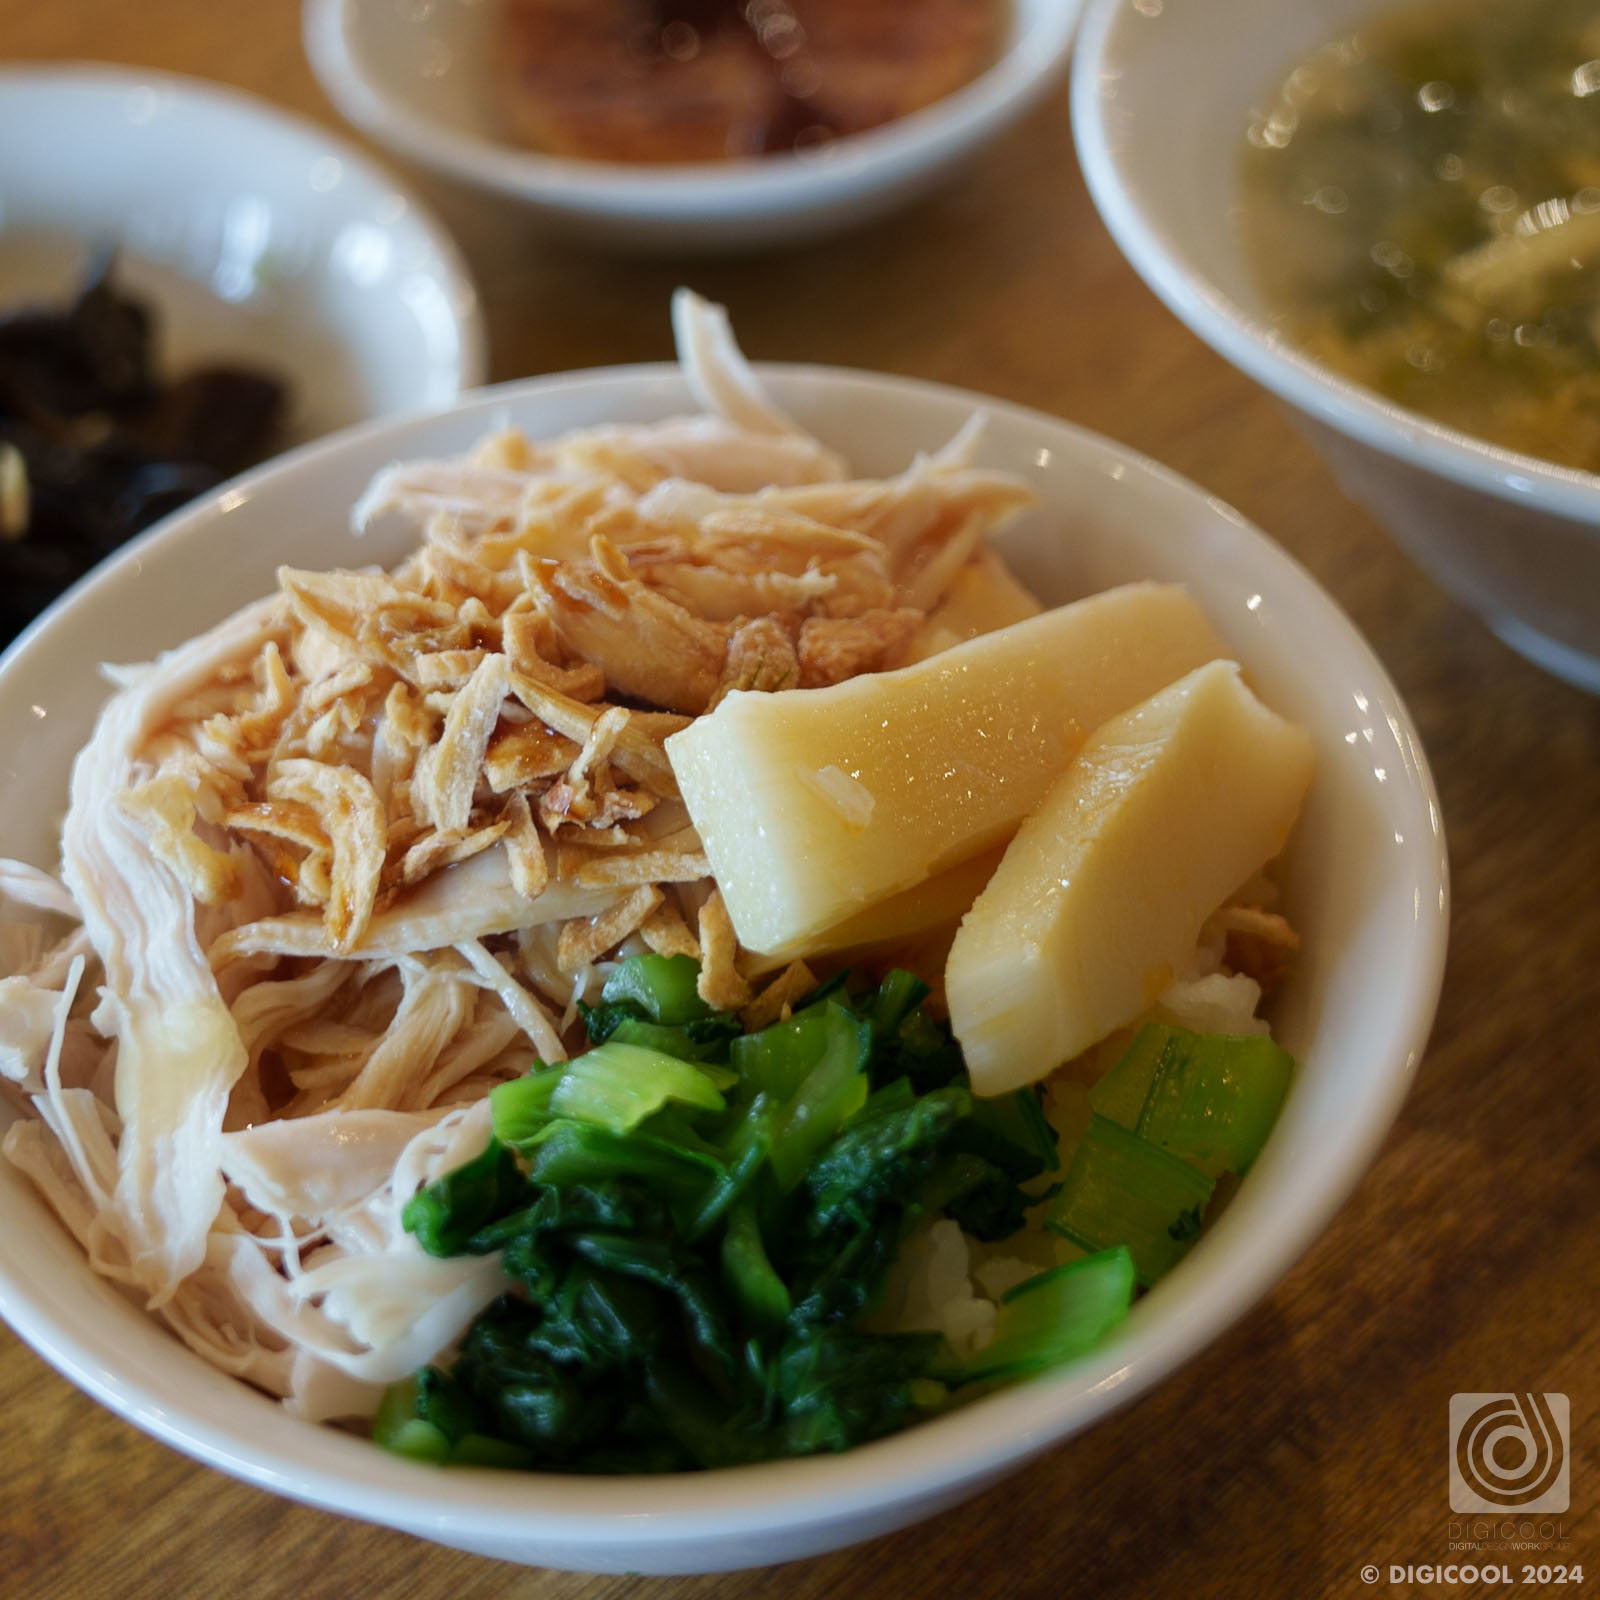 沖縄県 南城市・SEXY旅ご飯と台湾料理のコラボレストラン「玉城食堂」で台湾ランチを食べてきた。